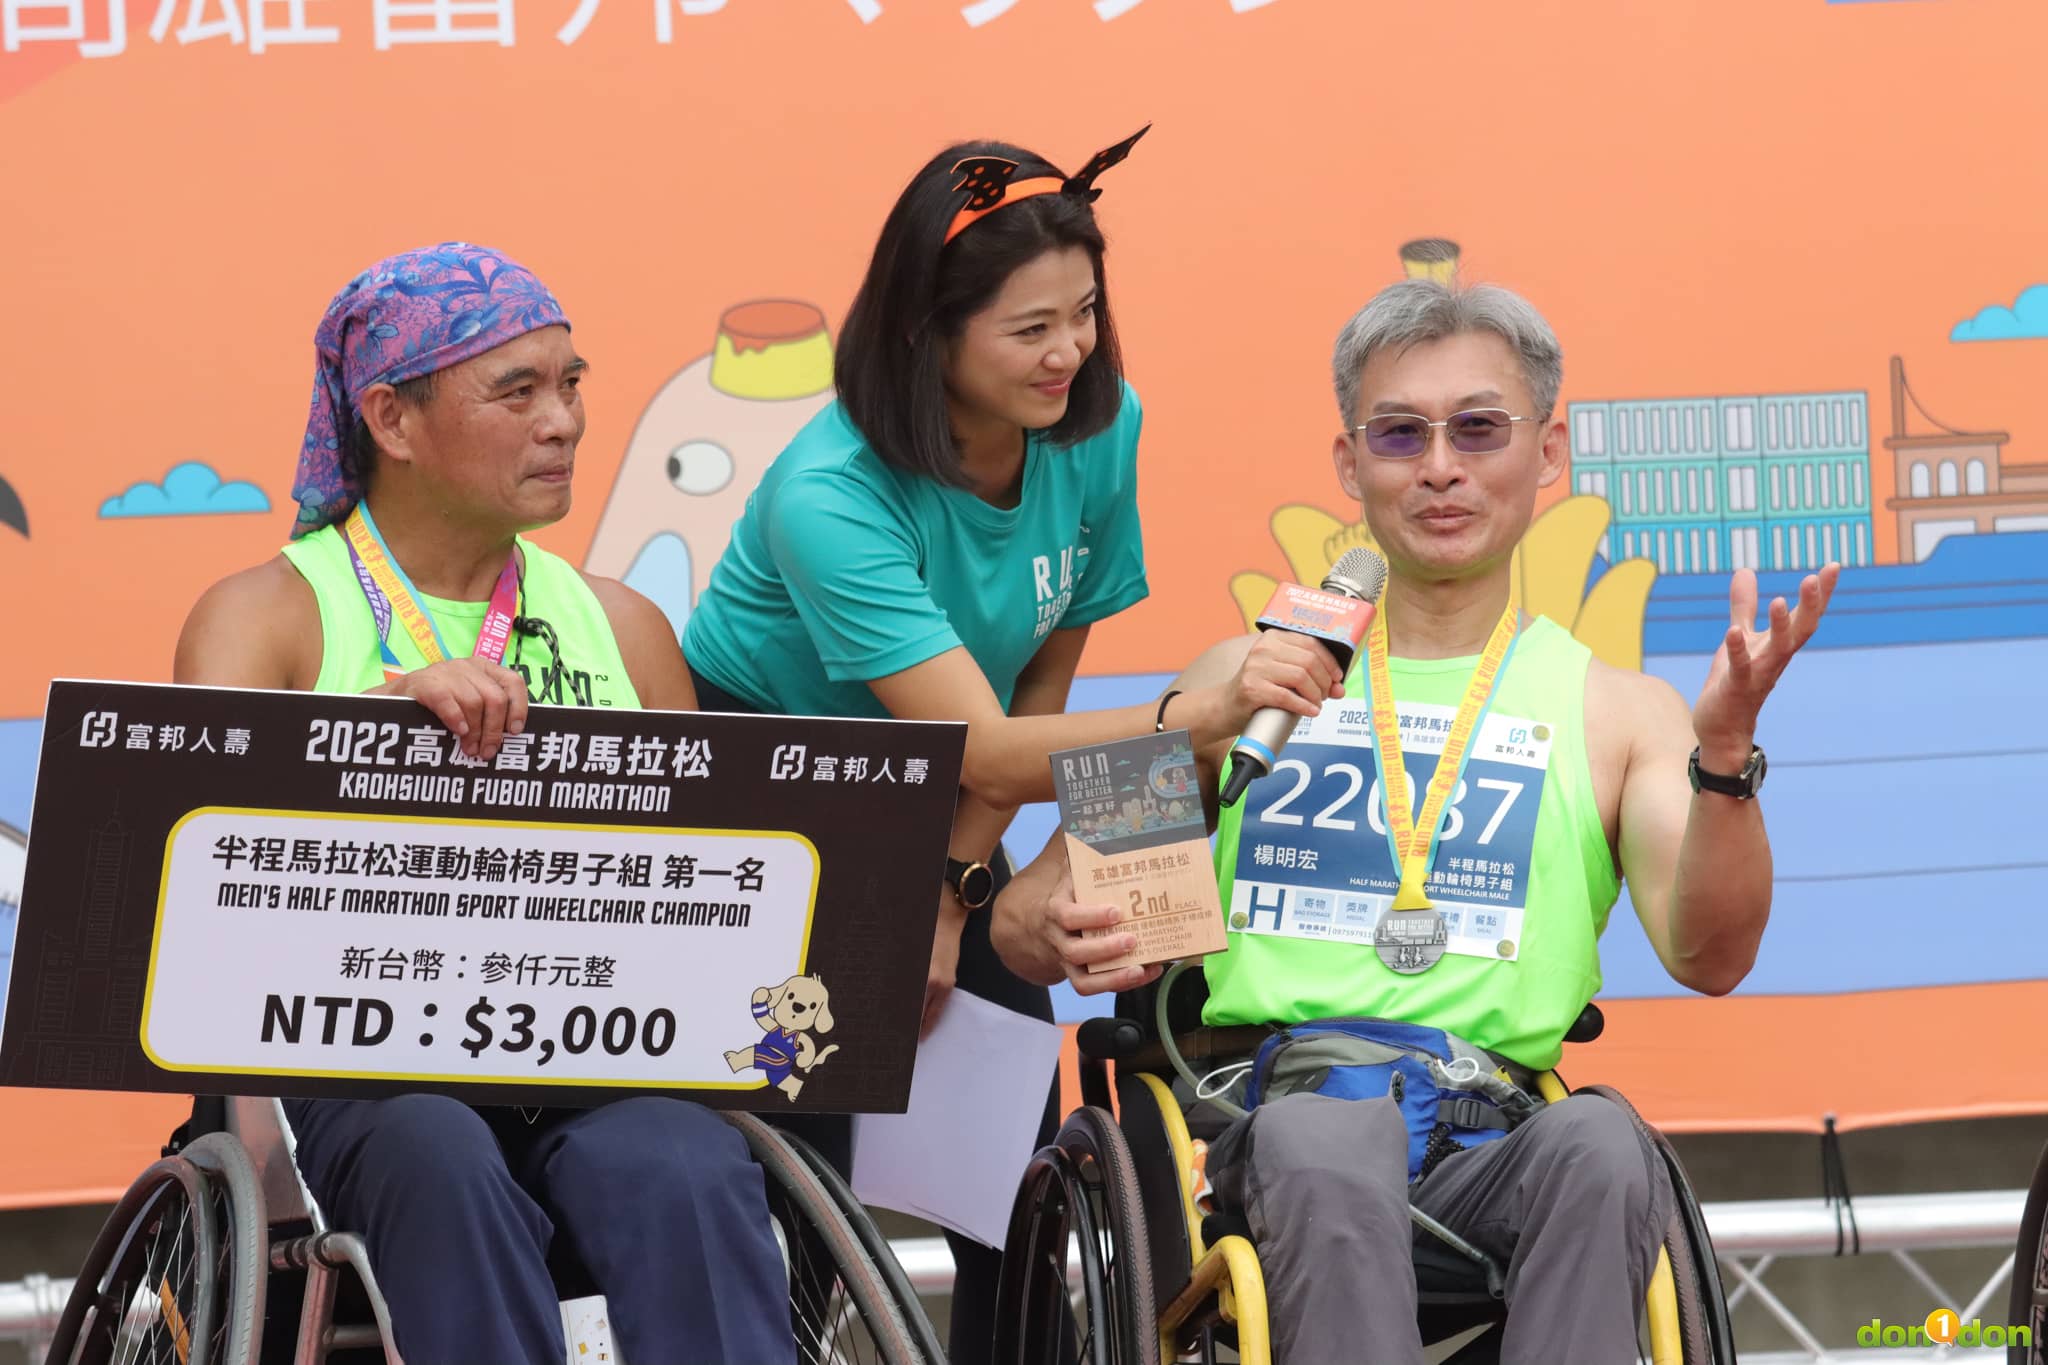 022 高雄富邦馬拉松首次增設「競速輪椅組」和「運動輪椅組」，並且增設視障組與輪椅組冠軍獎金